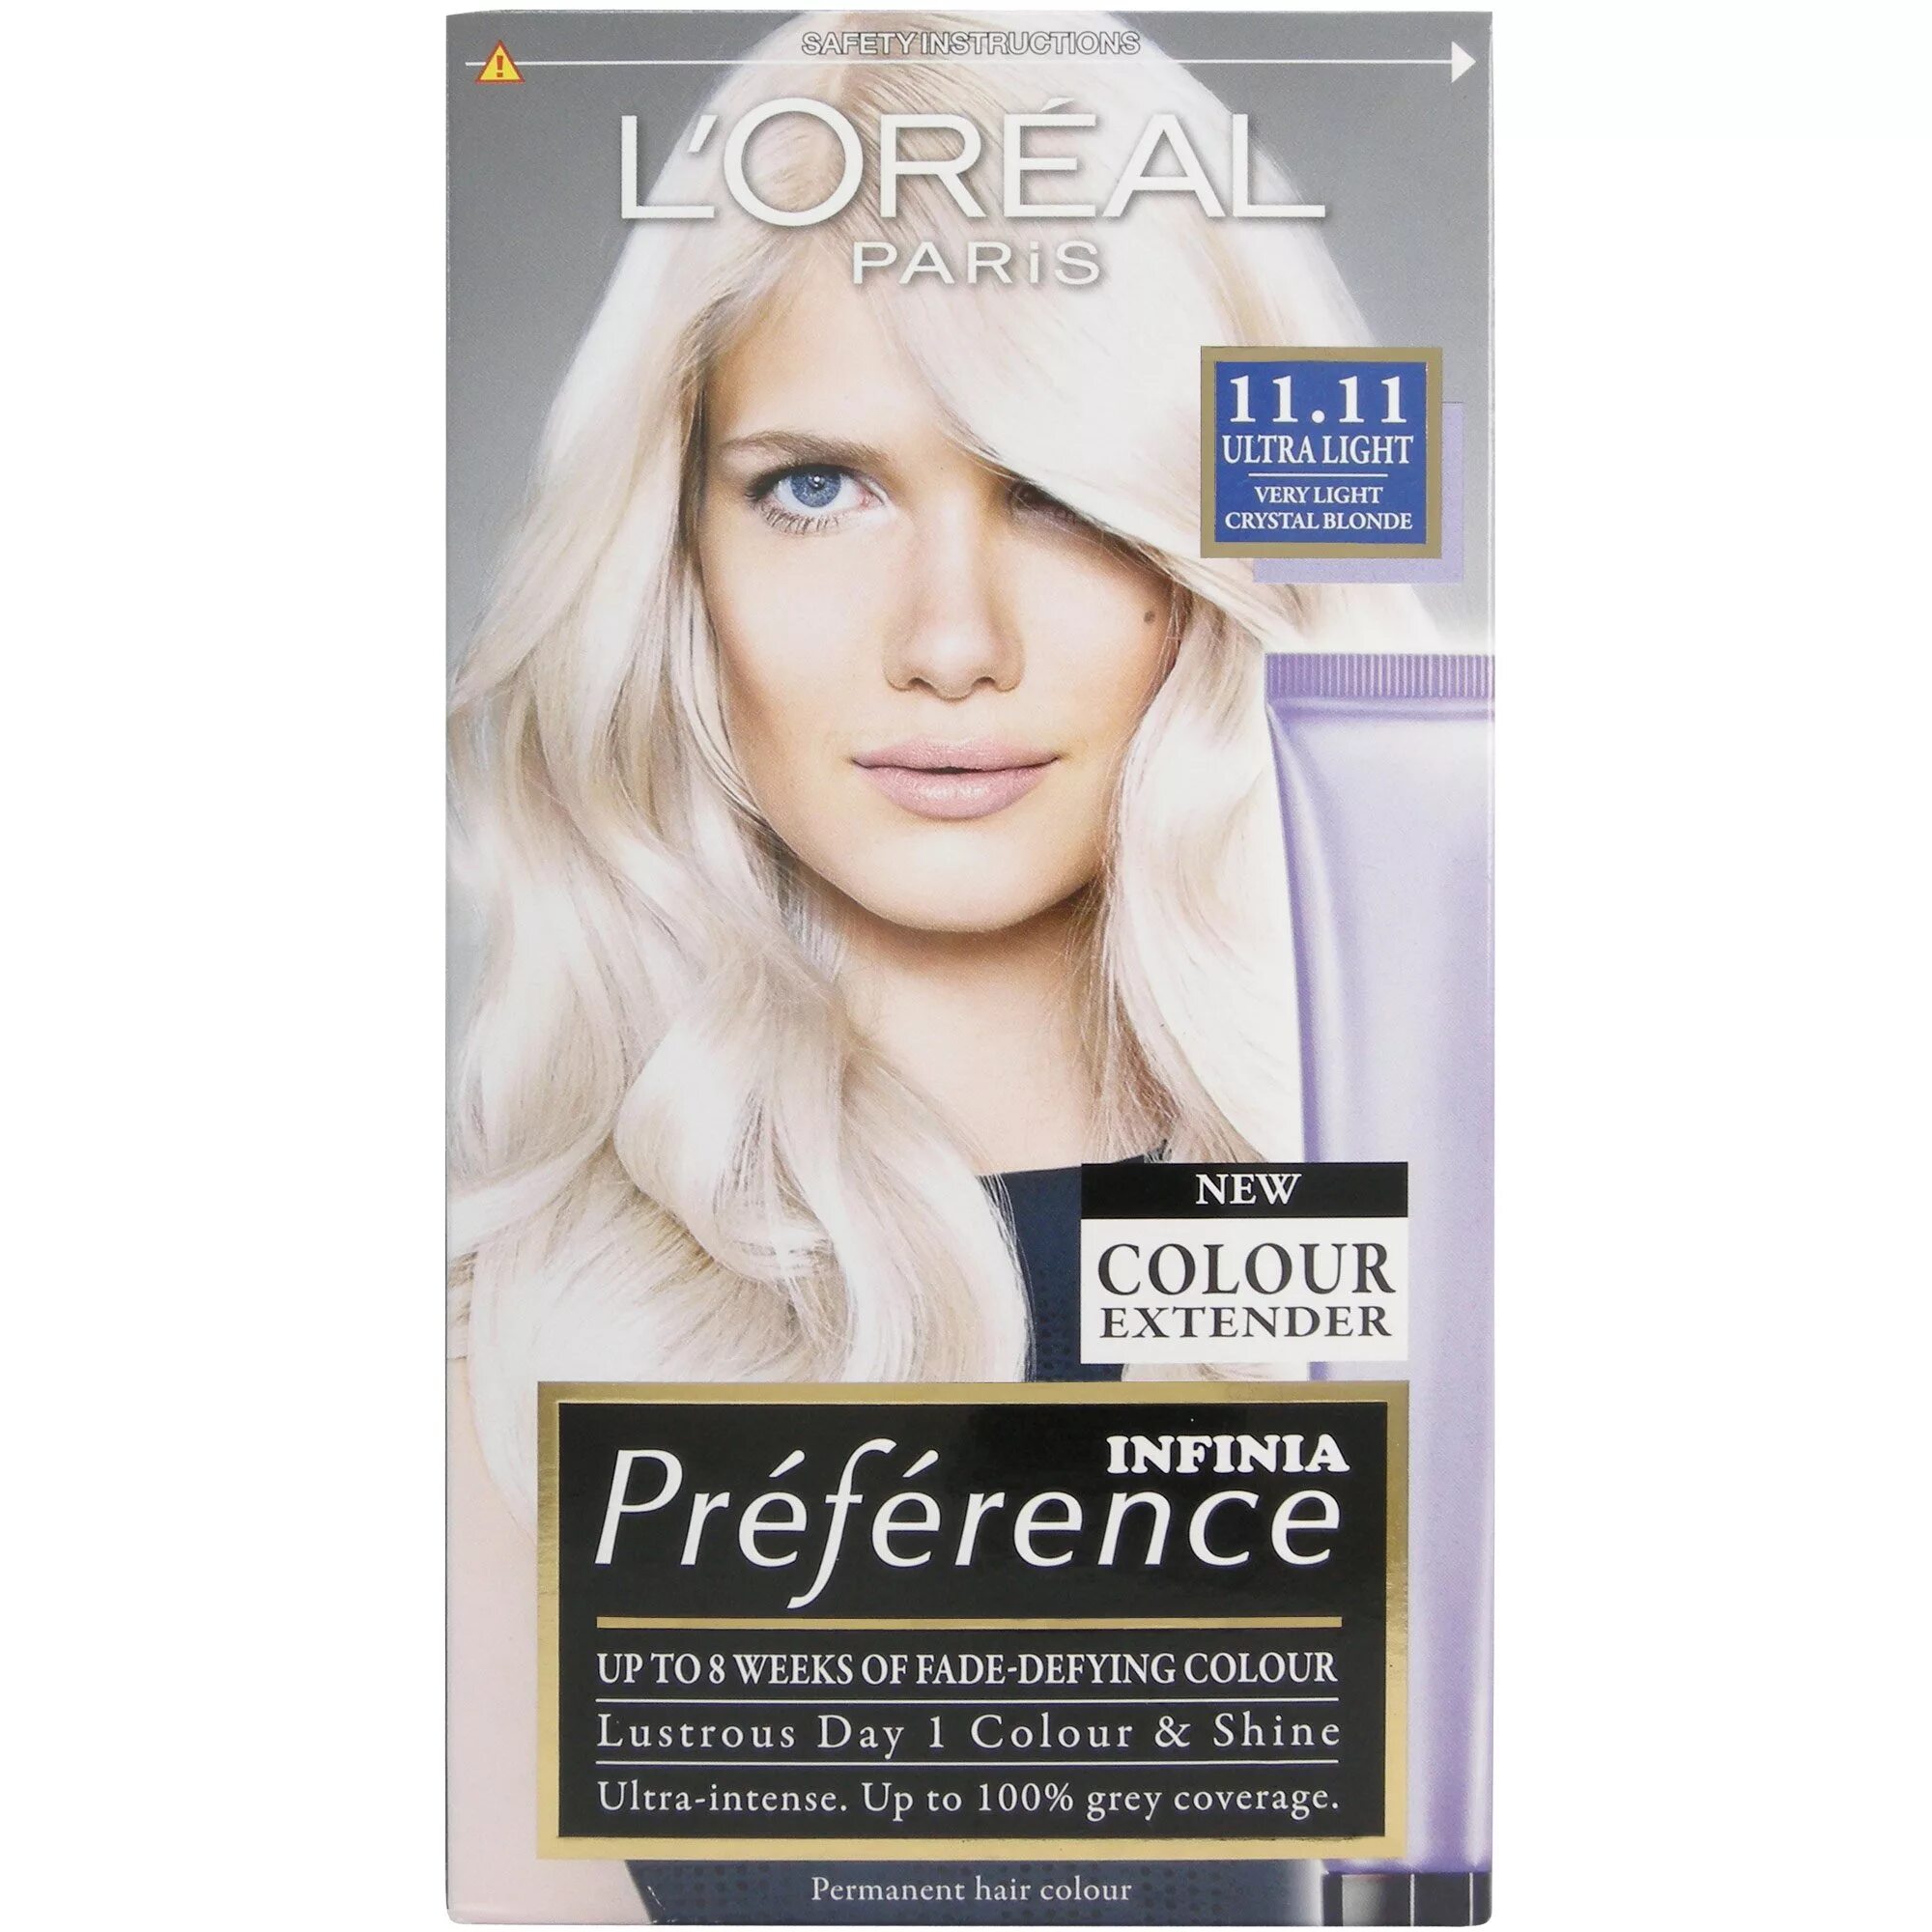 Преферанс 11.21. L'Oreal Paris preference осветлитель для волос, ультра-платиновый блонд. Лореаль преферанс блонд. Лореаль преферанс платина ультра блонд. Краска лореаль ультра пепельный